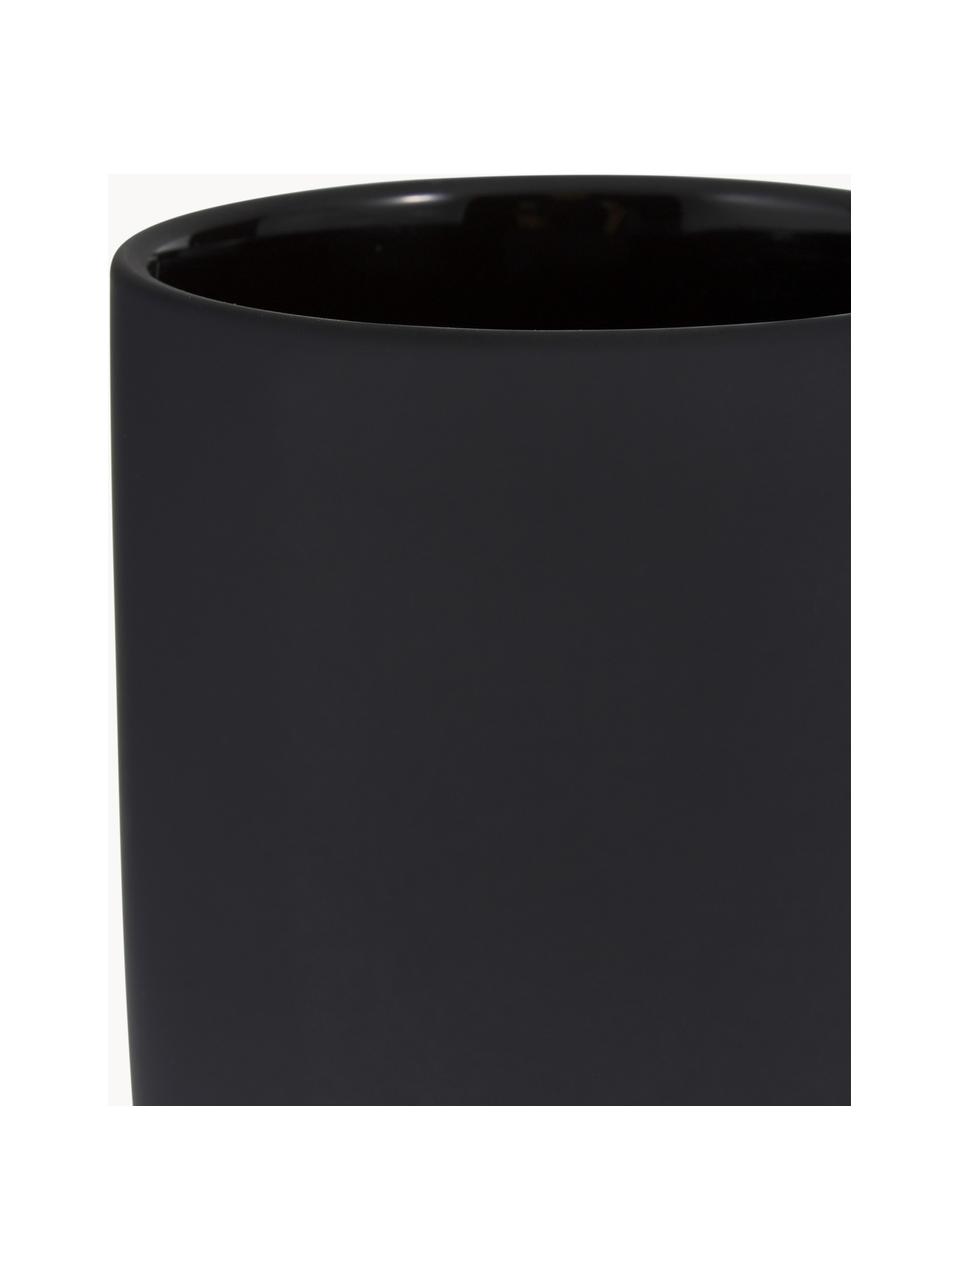 Kubek na szczoteczki Ume, Ceramika pokryta miękką w dotyku powłoką (tworzywo sztuczne), Czarny, Ø 8 x W 10 cm